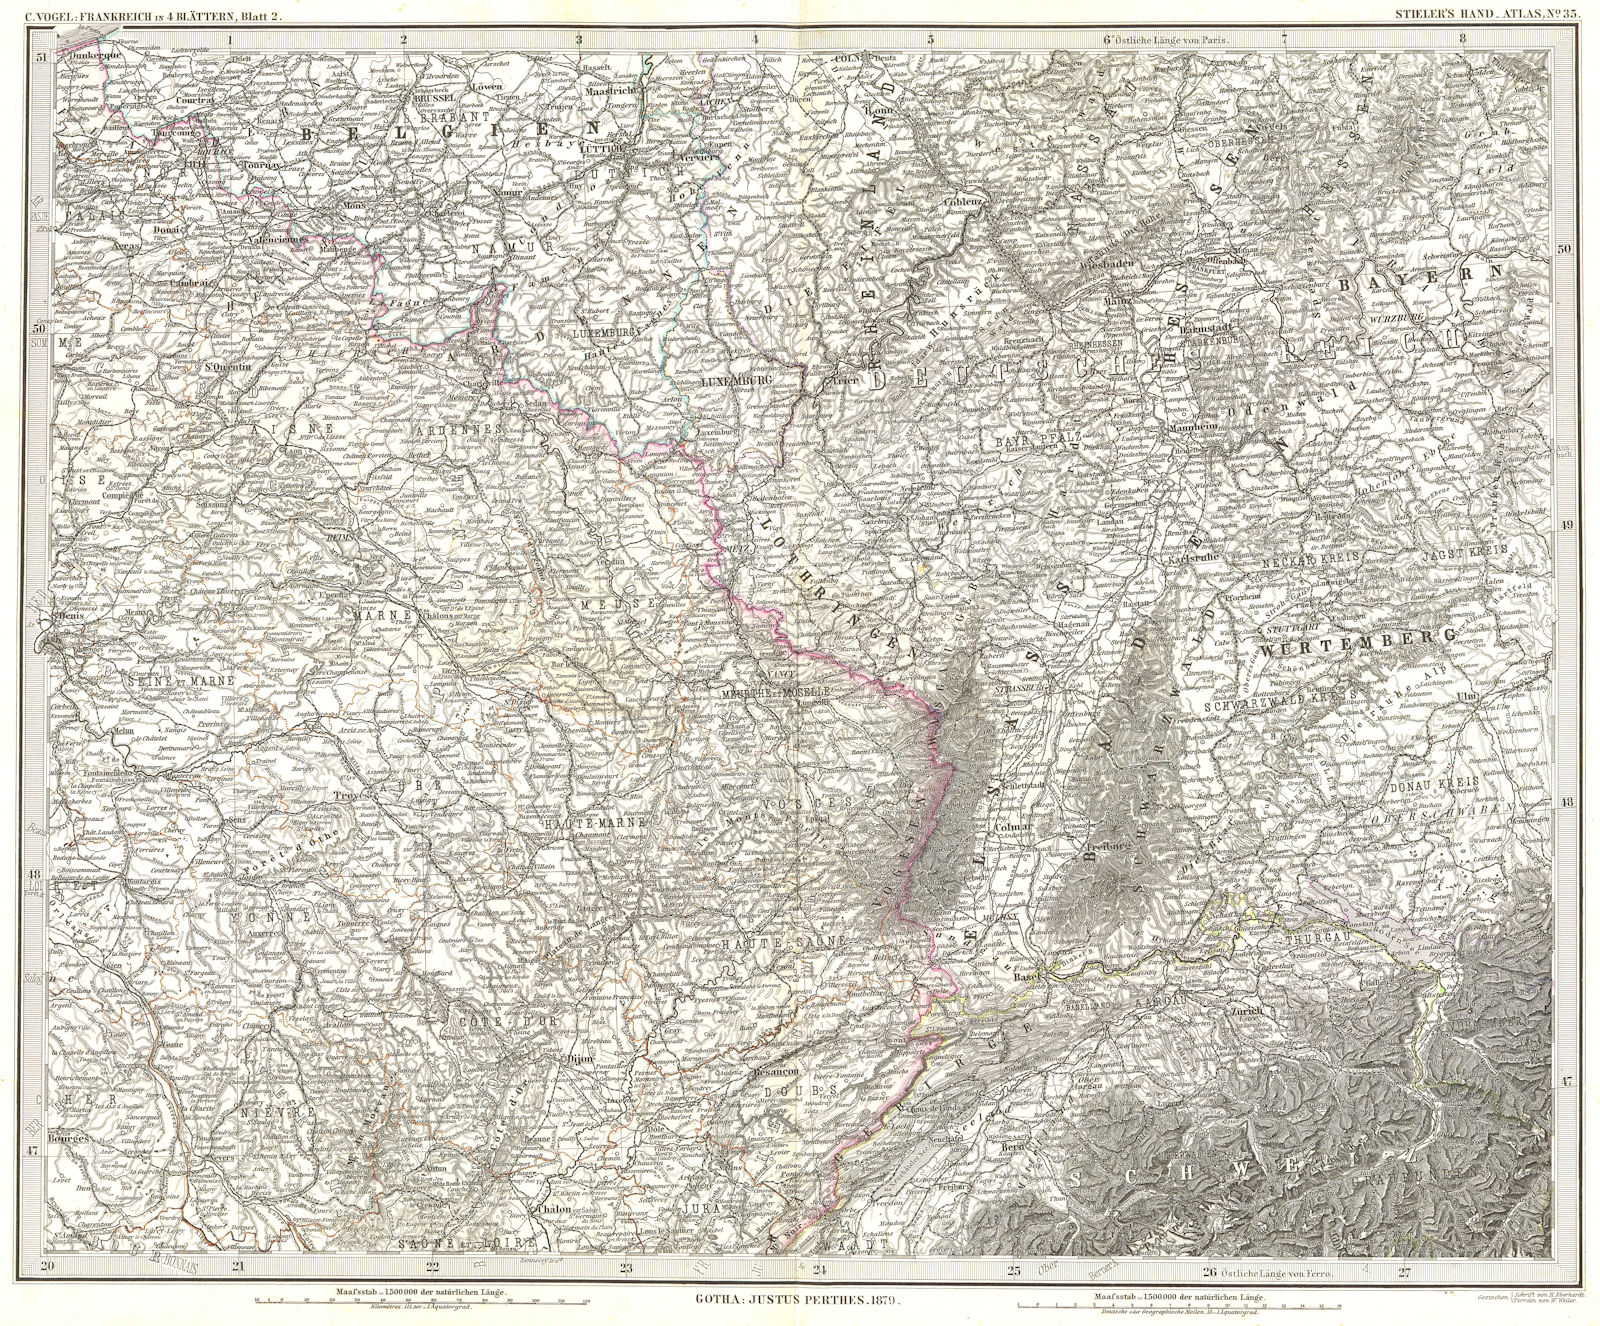 FRANCE. Frankreich NE Wurtemberg 1879 old antique vintage map plan chart